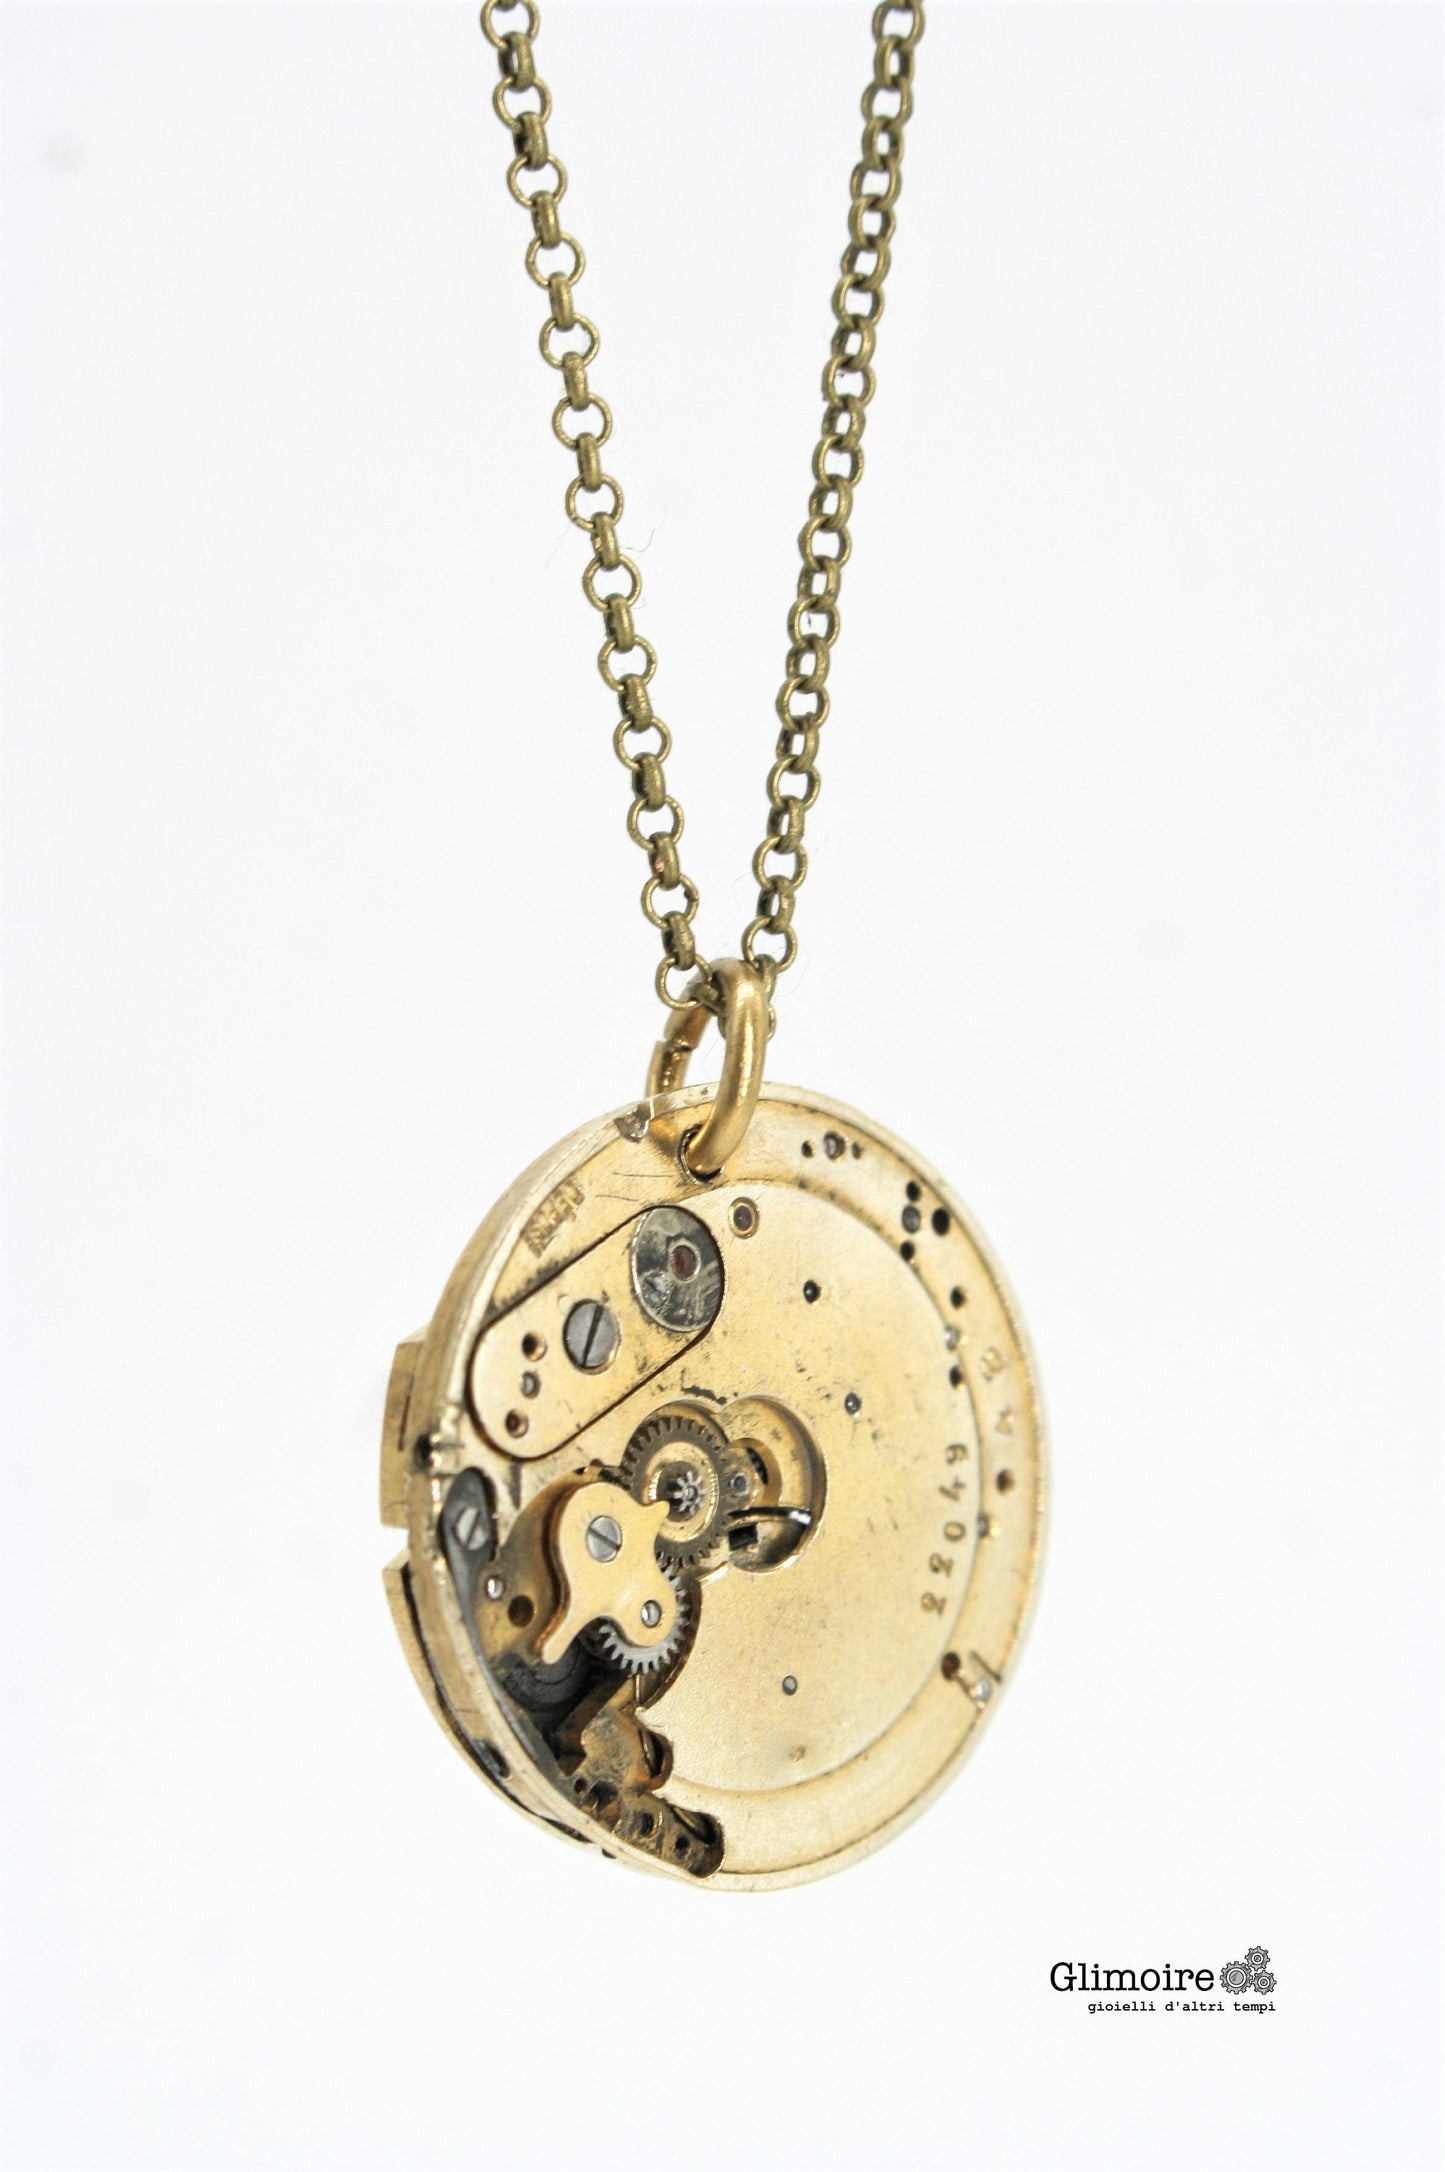 Collana con movimento vintage di orologio da taschino - ciondolo con meccanismo di orologio svizzero anni '30 art.286 - Glimoire